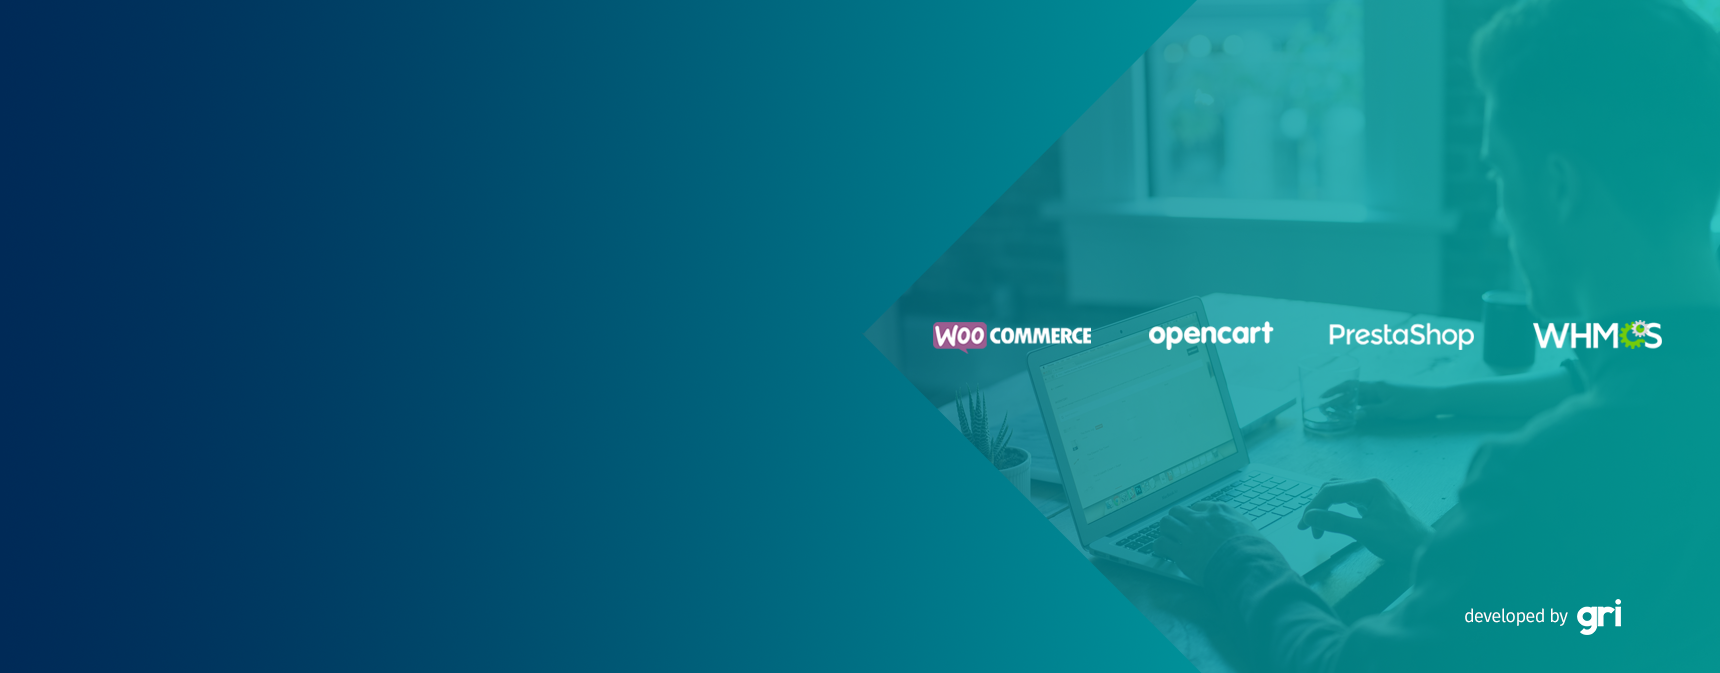 gri.net'te WooCommerce, OpenCart, PrestaShop ve WHMCS Açık Kaynak E-Ticaret Paketleri Üye İş Yerlerimize Özel Ücretsiz!